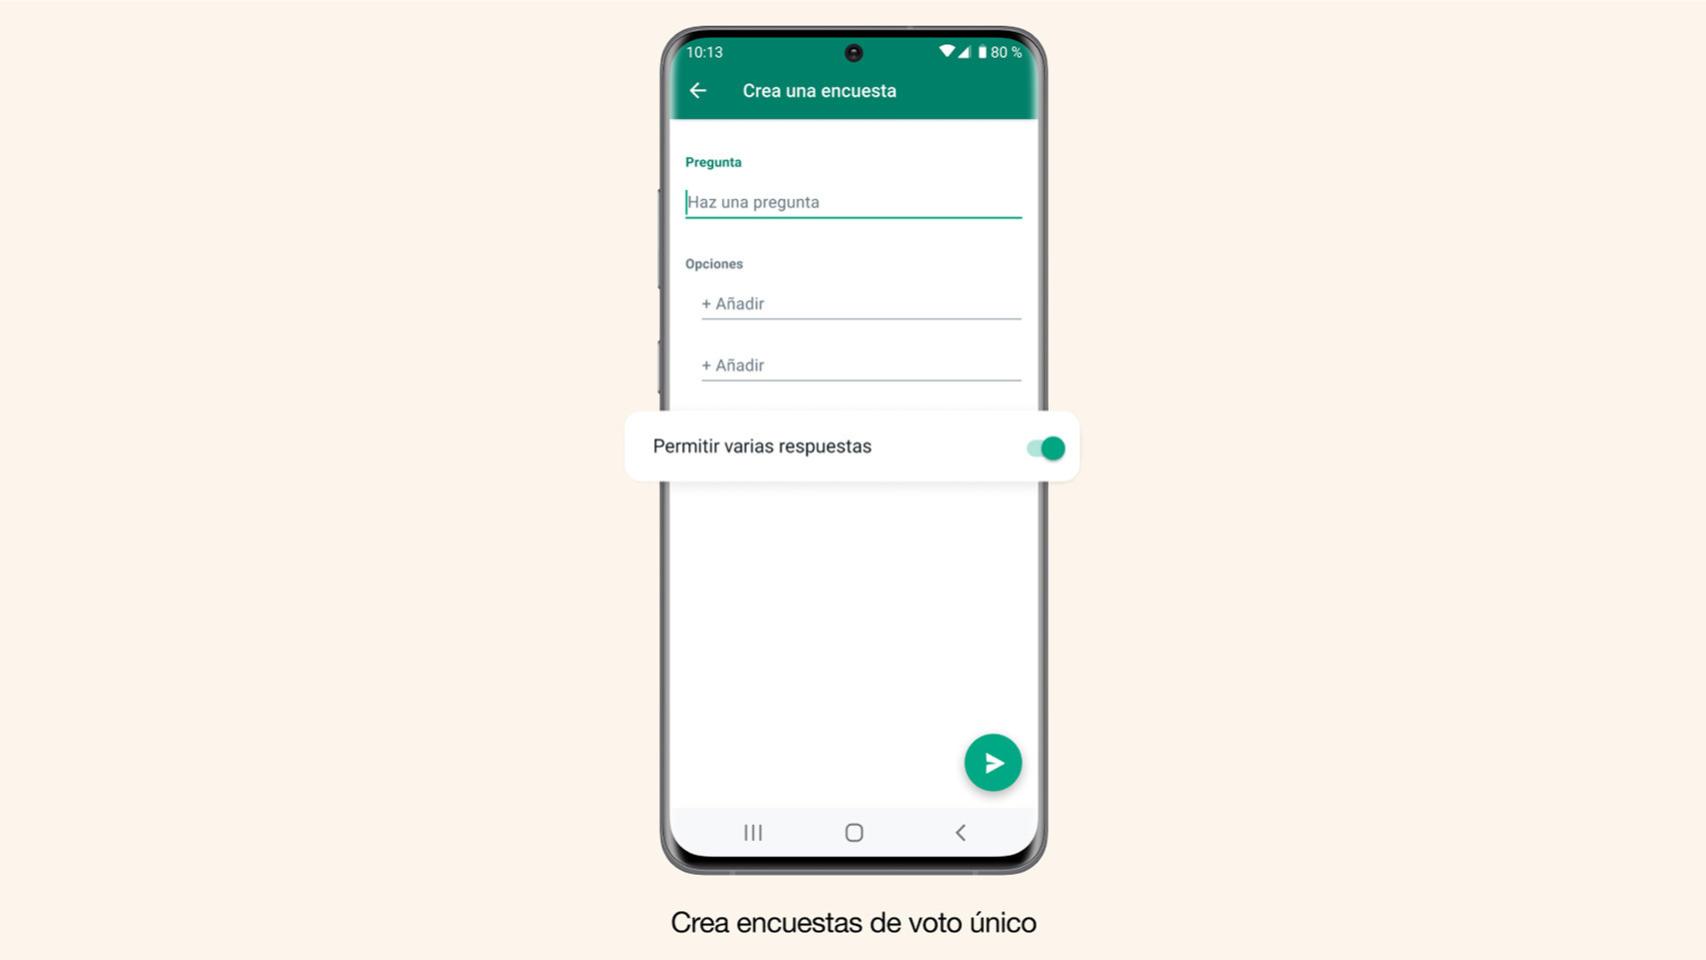 Whatsapp Se Renueva Mejora Las Encuestas Y Estrena Función Para Compartir Archivos 5869